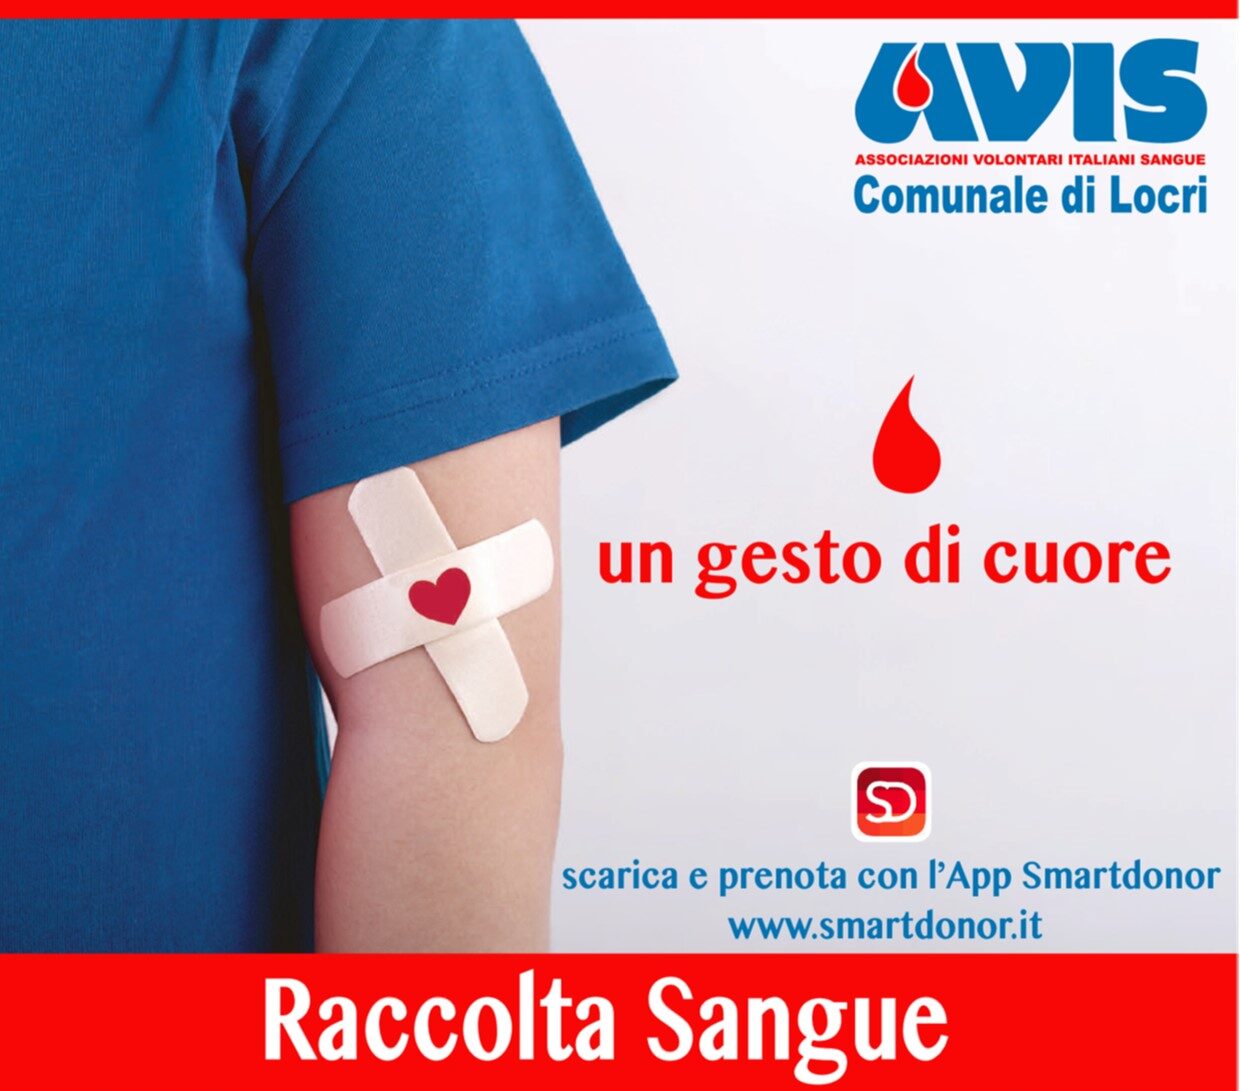 L’AVIS Comunale di Locri comunica le date delle raccolte di sangue per il mese di ottobre 2022